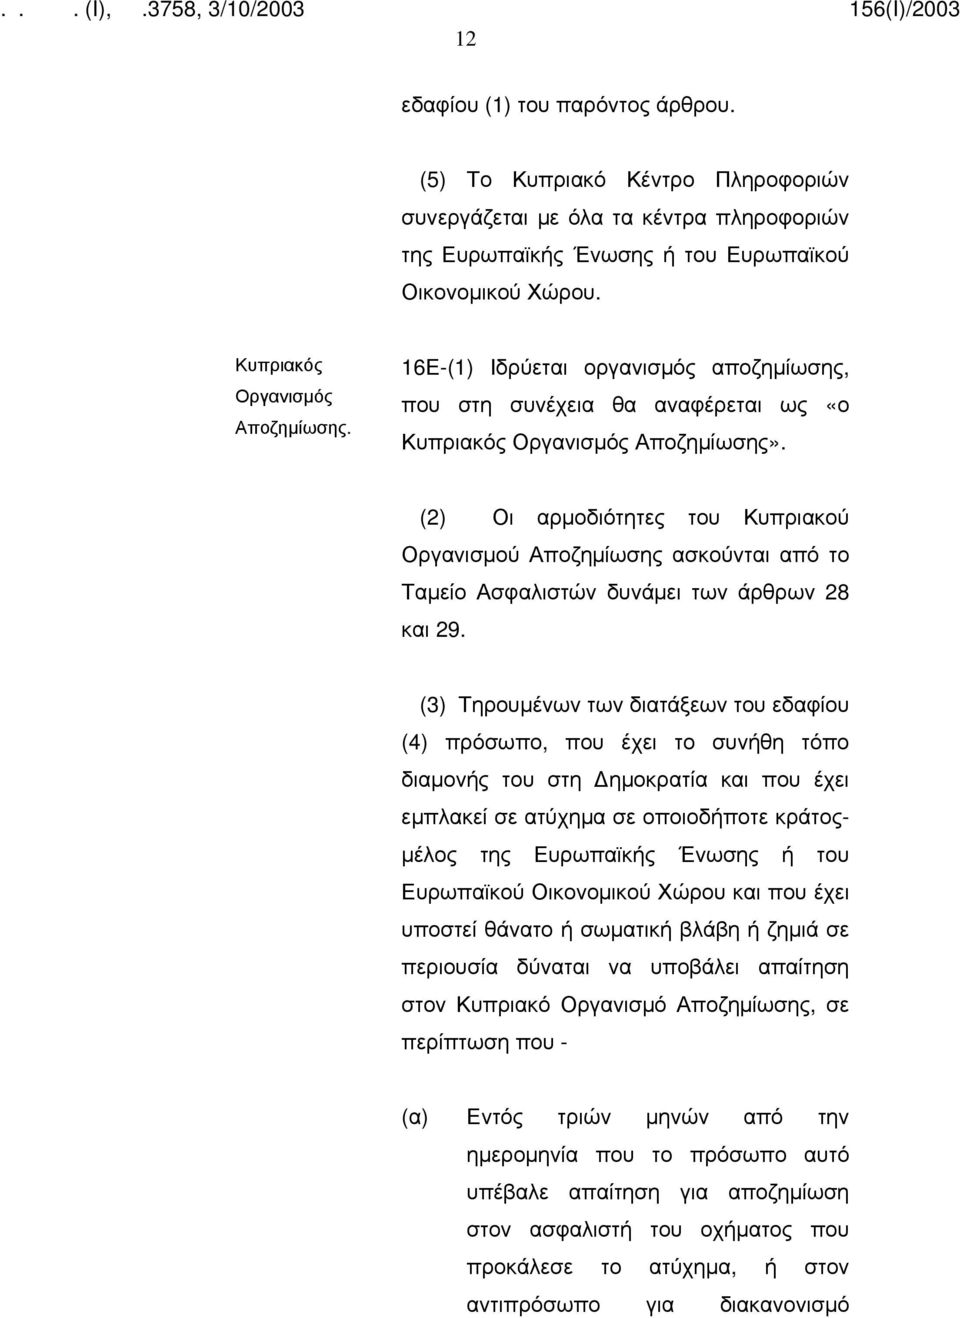 (2) Οι αρμοδιότητες του Κυπριακού Οργανισμού Αποζημίωσης ασκούνται από το Ταμείο Ασφαλιστών δυνάμει των άρθρων 28 και 29.